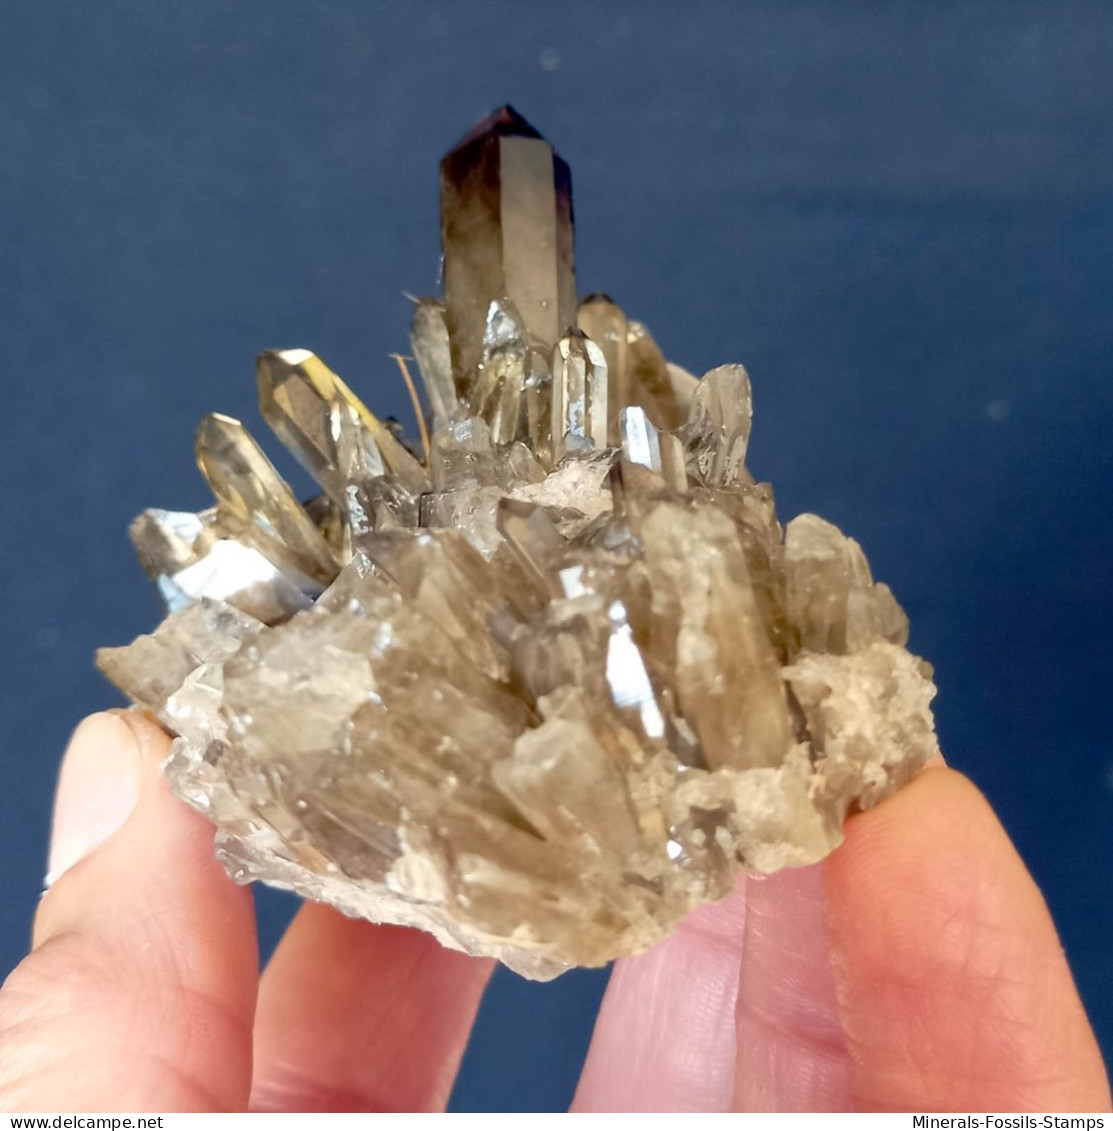 #07 – SCHÖNE MORIONE QUARZ Kristalle (Kara-Oba, Moiynkum, Jambyl, Kasachstan) - Minerals